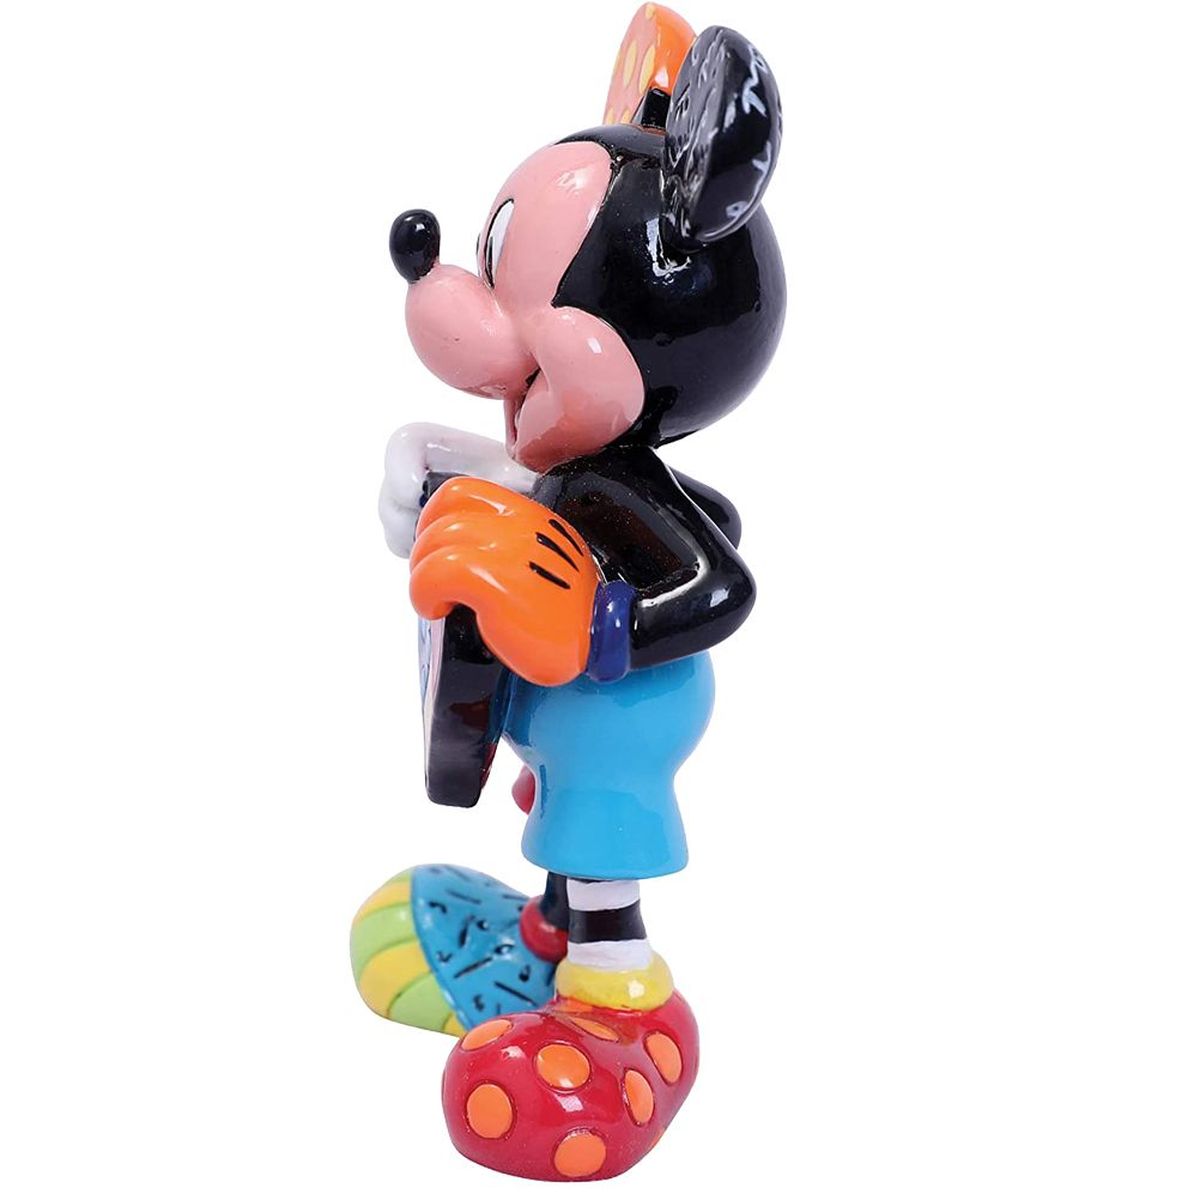 Mickey Figure Collection by Romero Britto